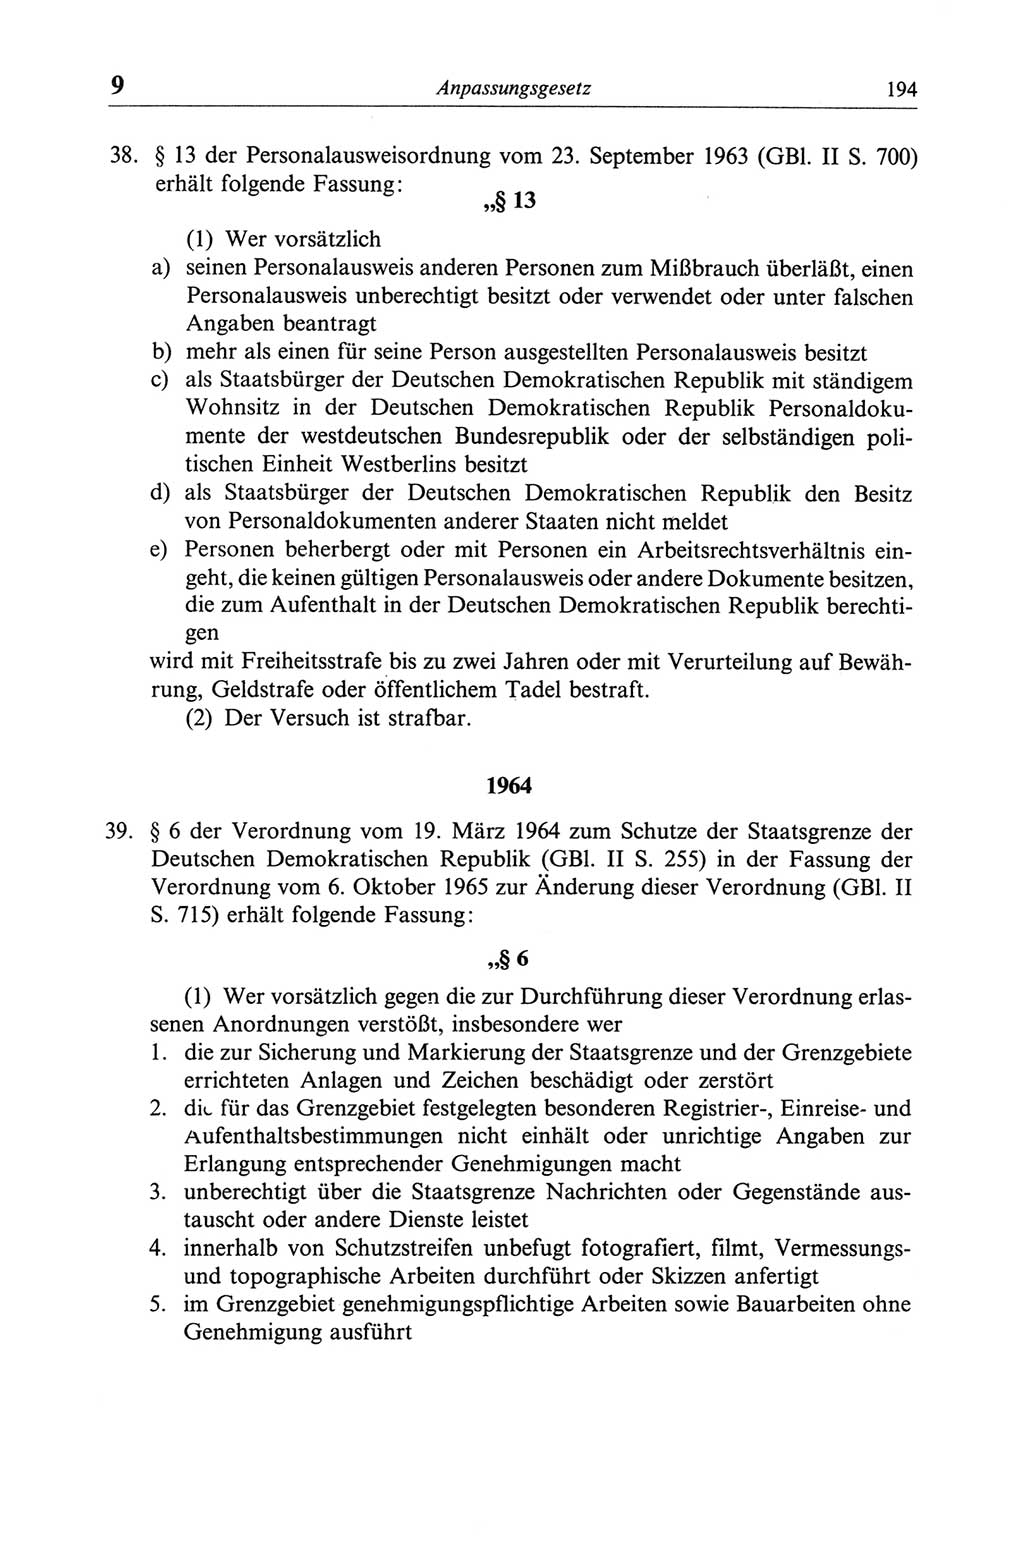 Strafgesetzbuch (StGB) der Deutschen Demokratischen Republik (DDR) und angrenzende Gesetze und Bestimmungen 1968, Seite 194 (StGB Ges. Best. DDR 1968, S. 194)